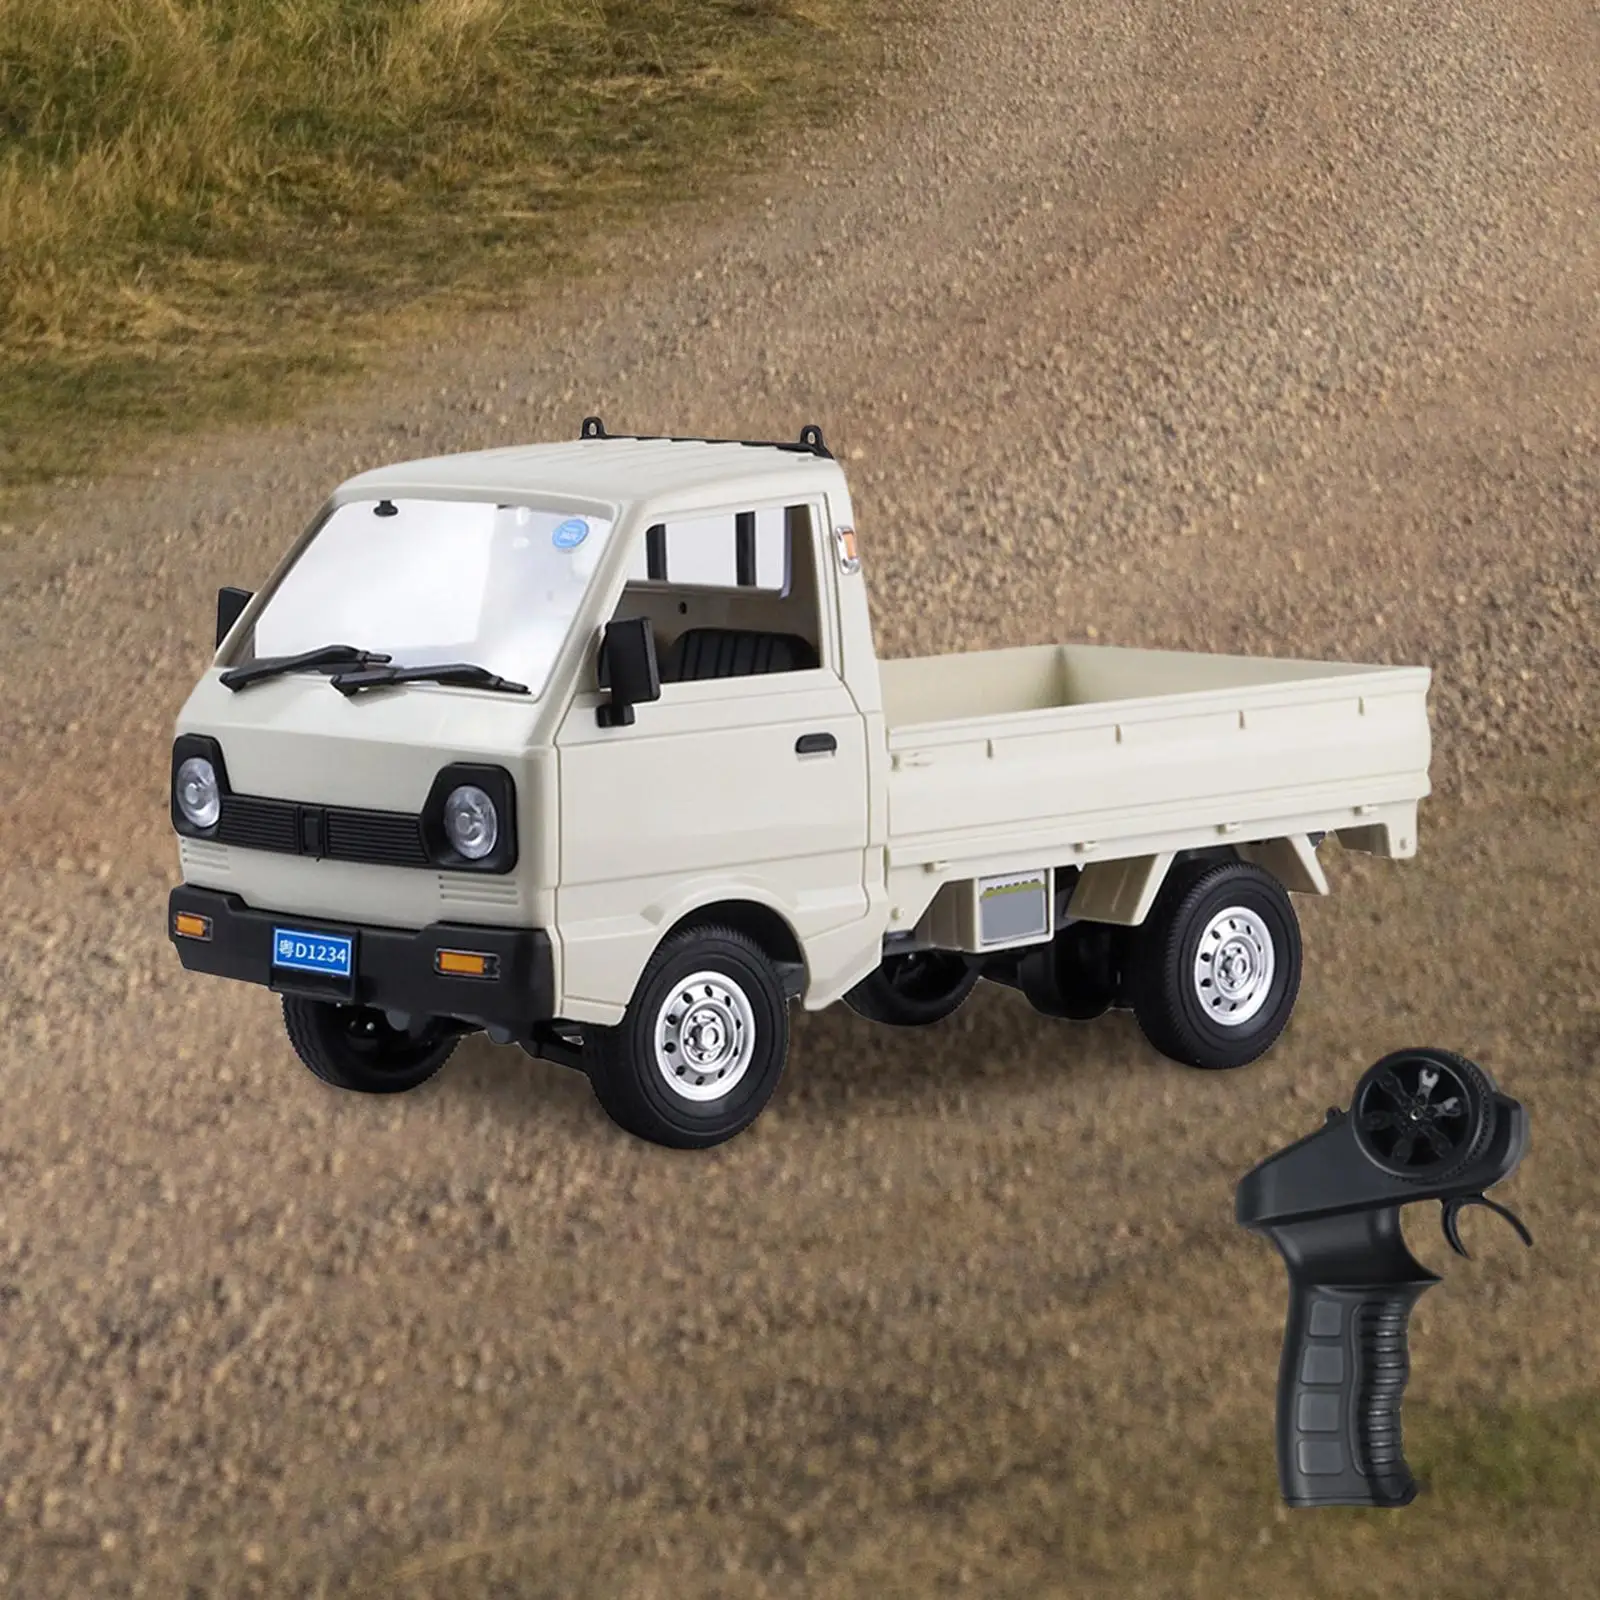 RC Truck Radio Control Model Toys 4 Channel Crawler Car for Beginner